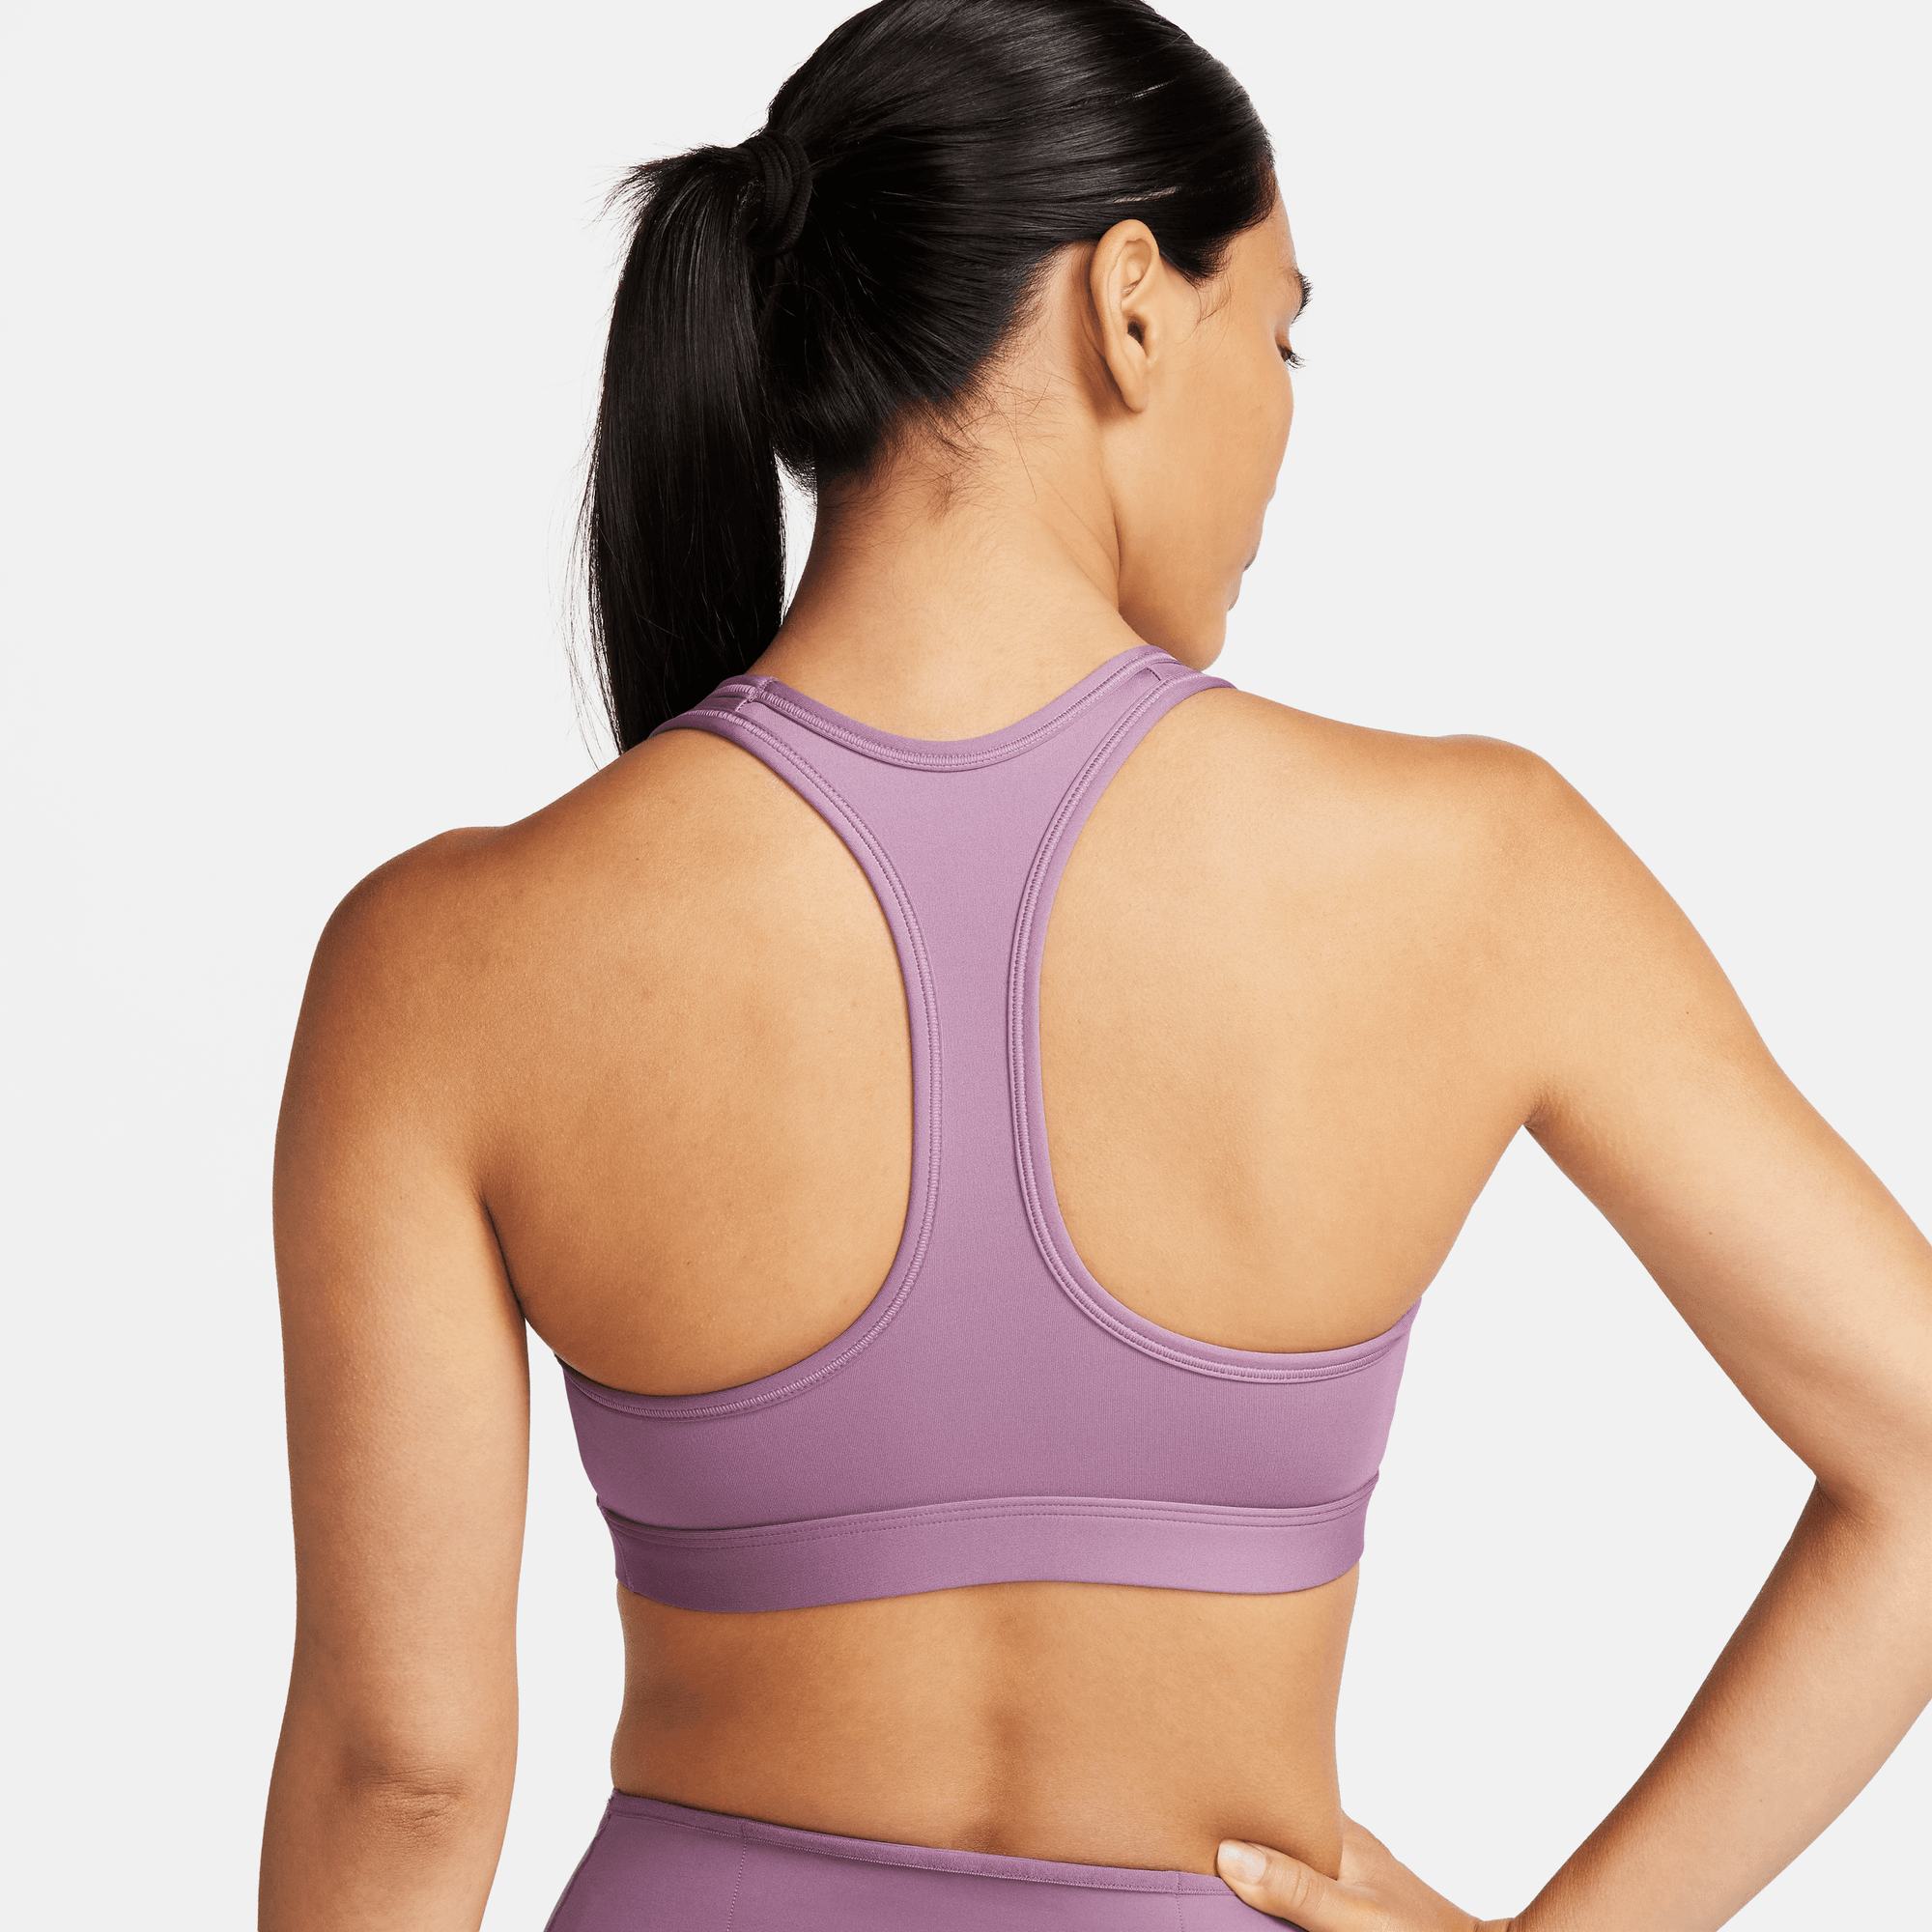 Nike Women's Dri Fit Medium Support Sports Bra Purple Size 1X